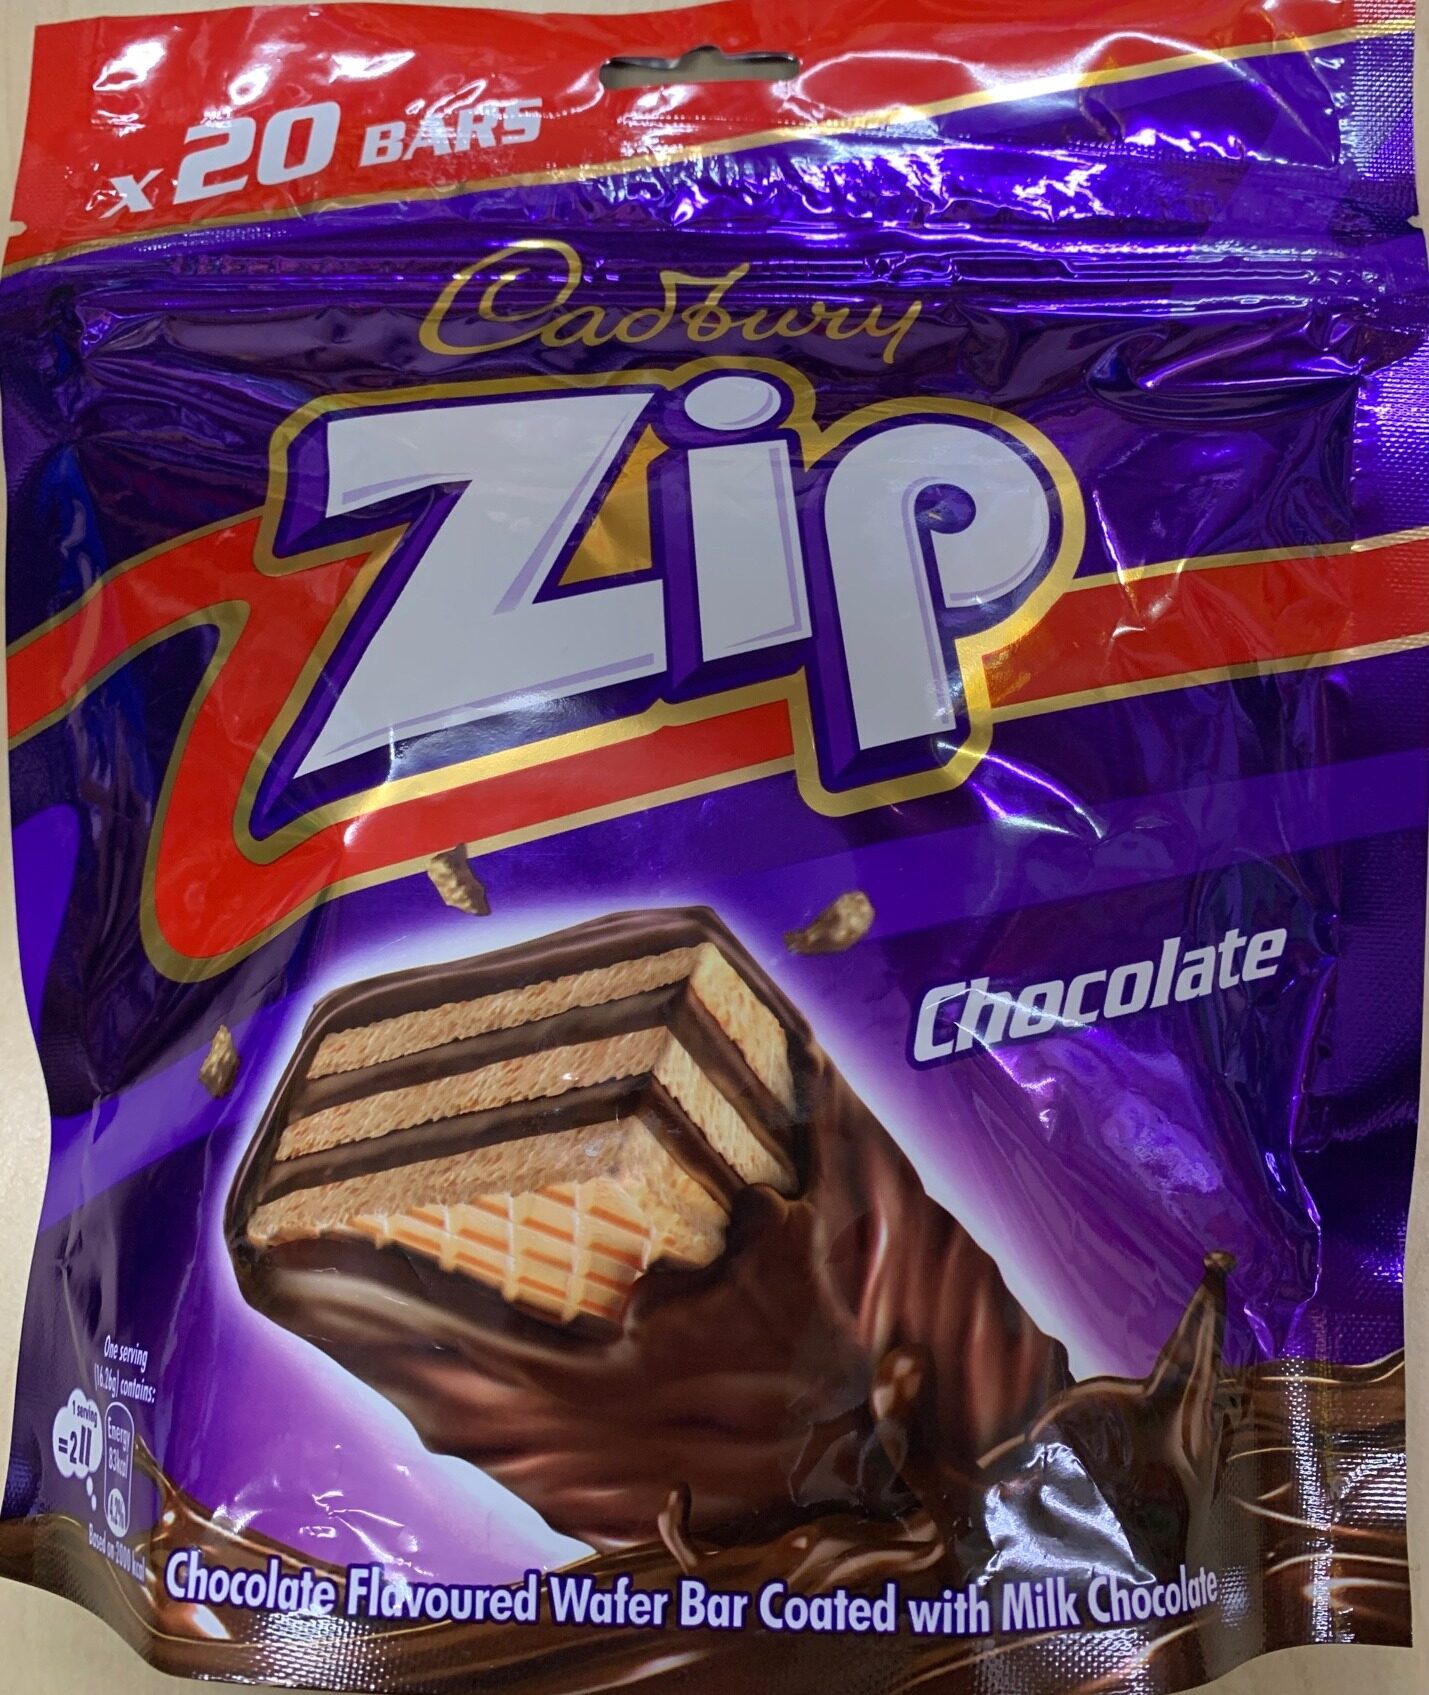 Zip cadbury The all